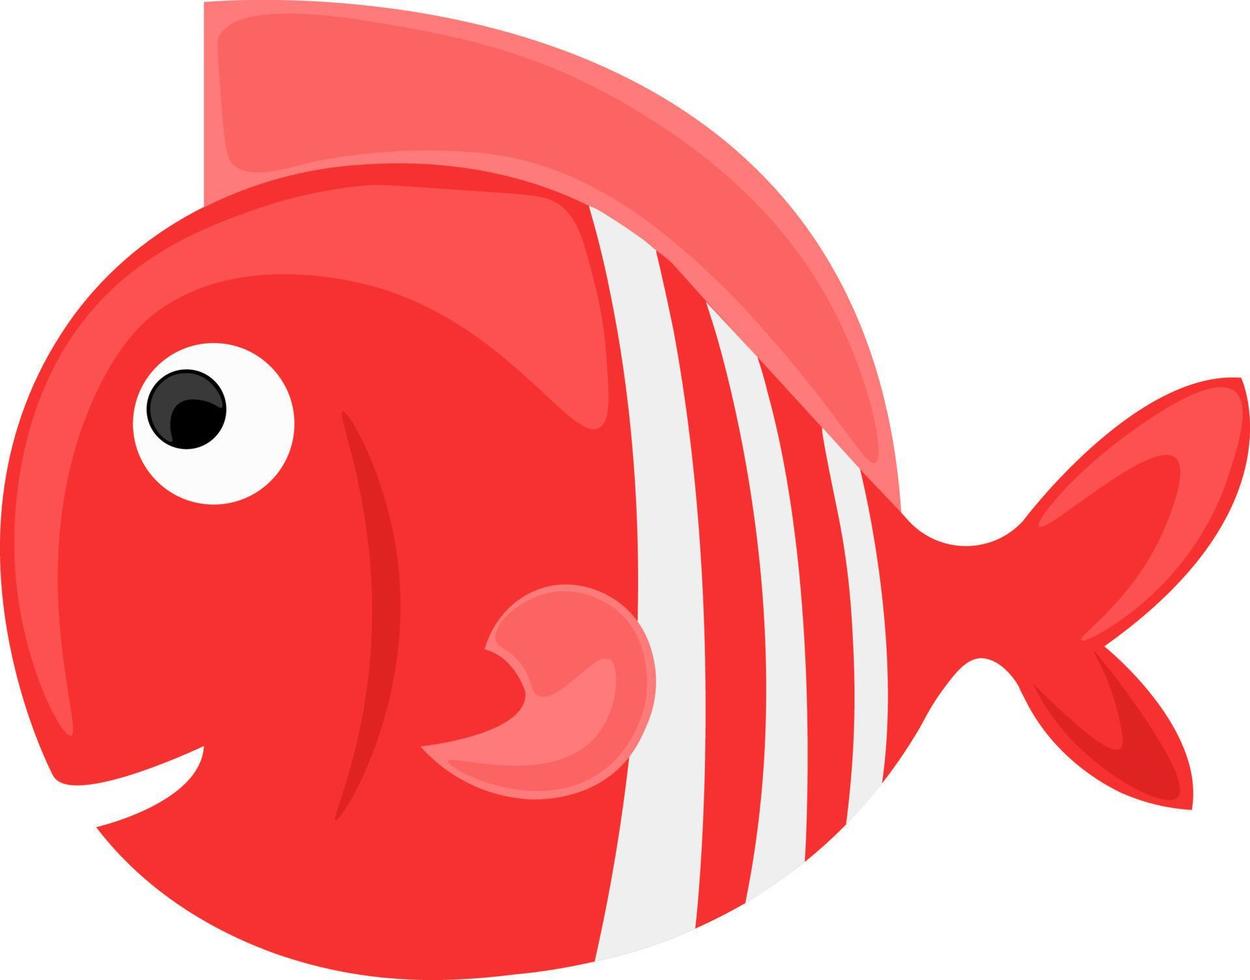 poisson rouge, illustration, vecteur sur fond blanc.